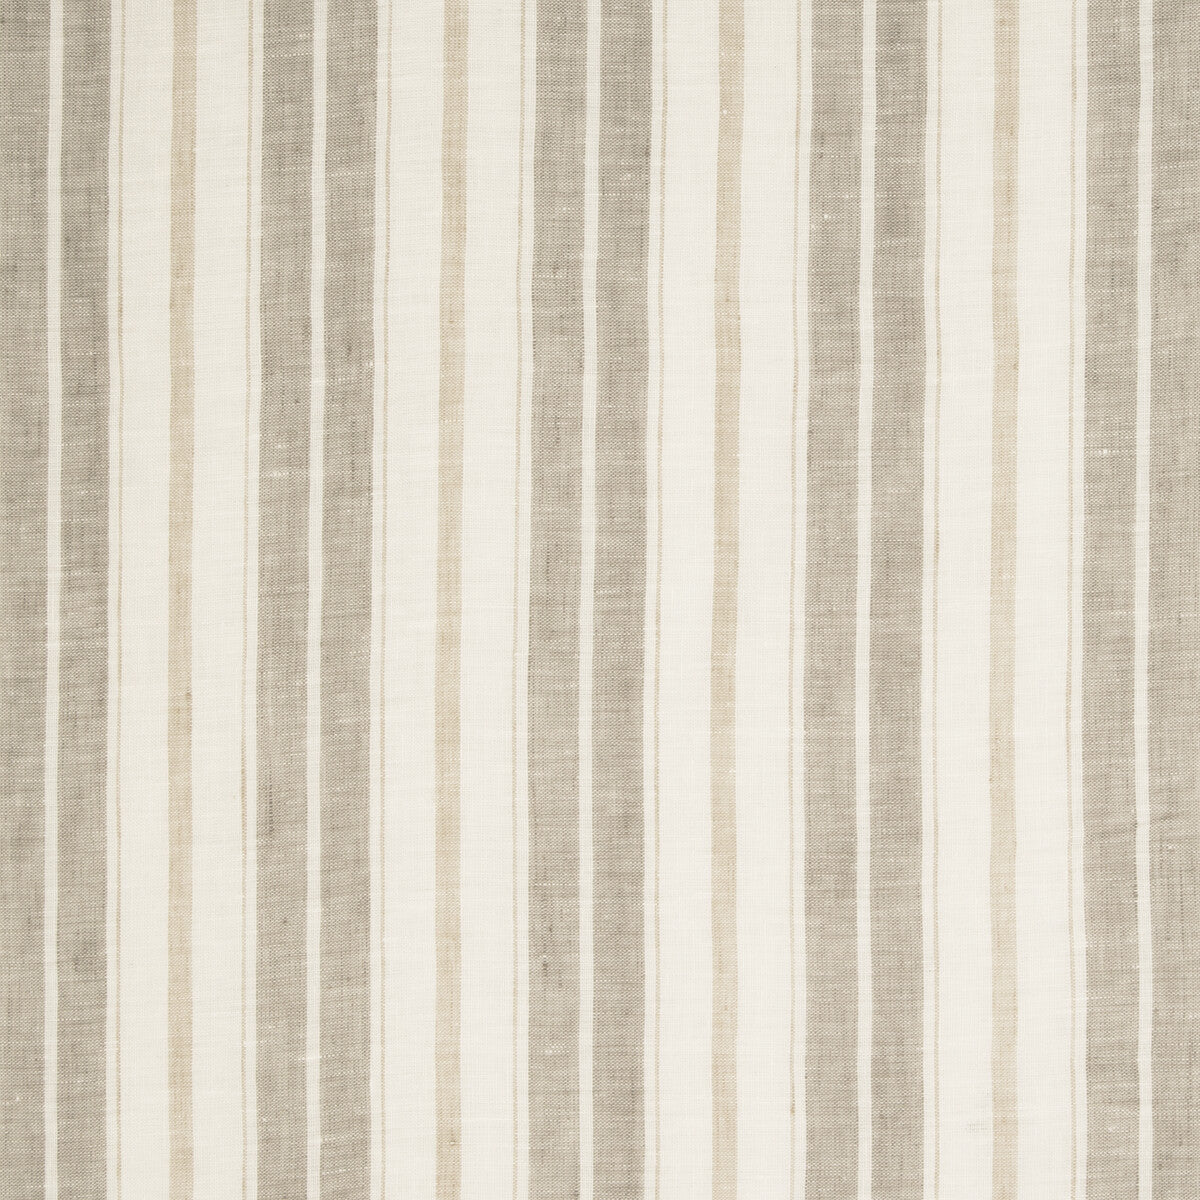 Kravet Design fabric in 4841-106 color - pattern 4841.106.0 - by Kravet Design